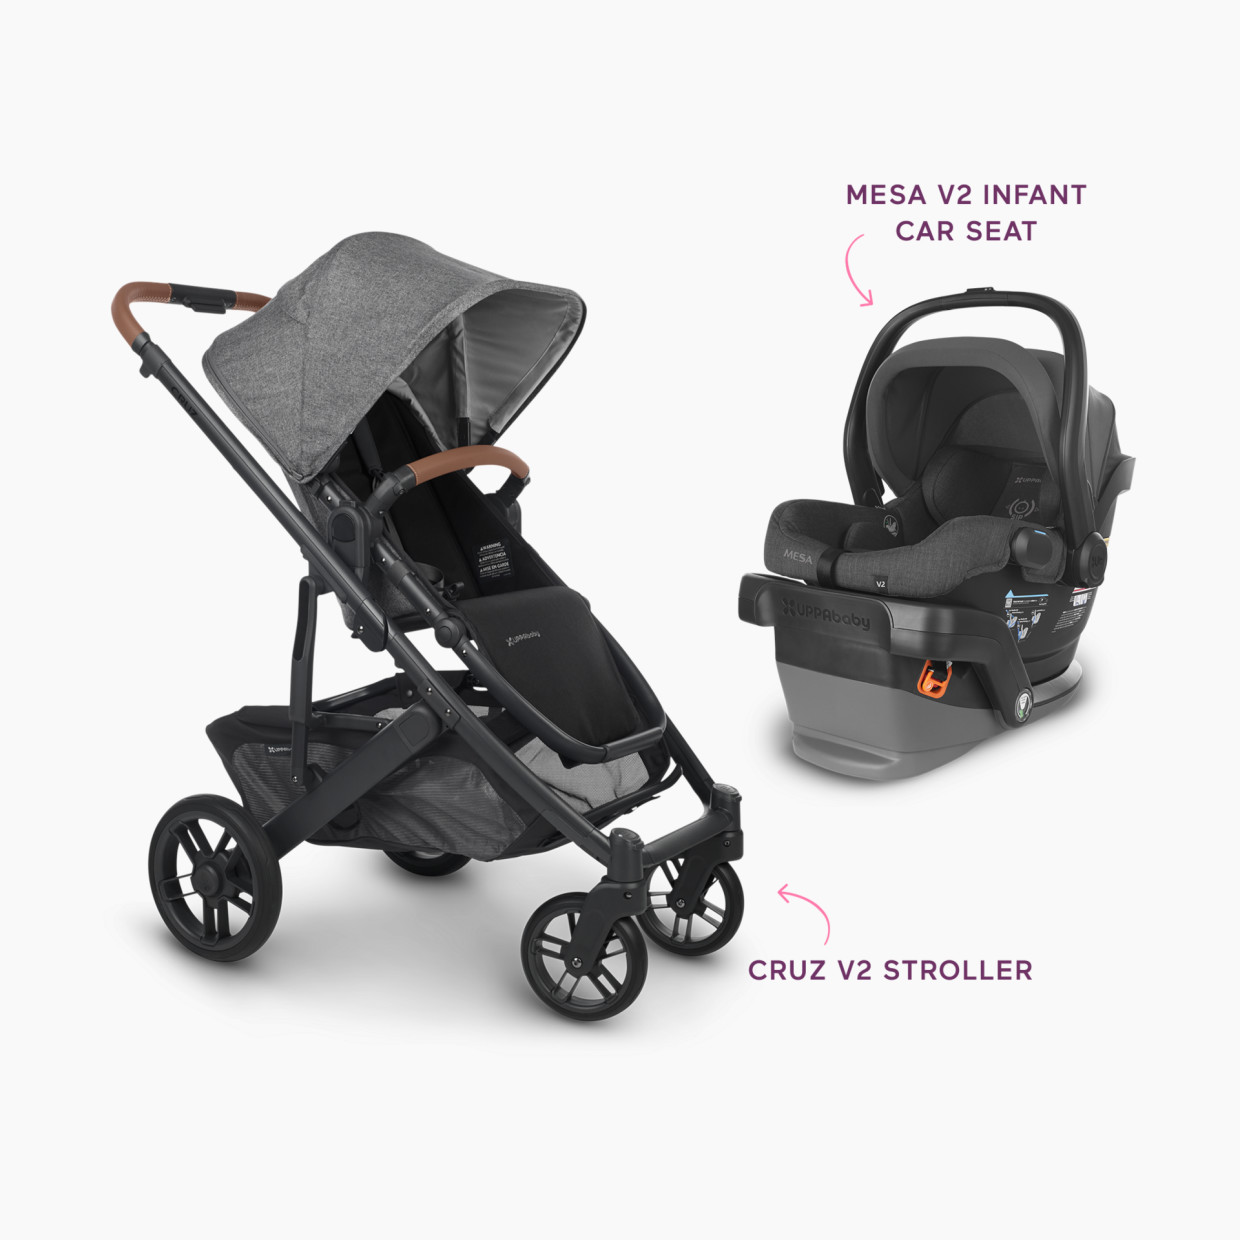 UPPAbaby MESA V2 Infant Car Seat & Cruz V2 Stroller Travel System - Mesa V2 Greyson/Cruz V2 Greyson.